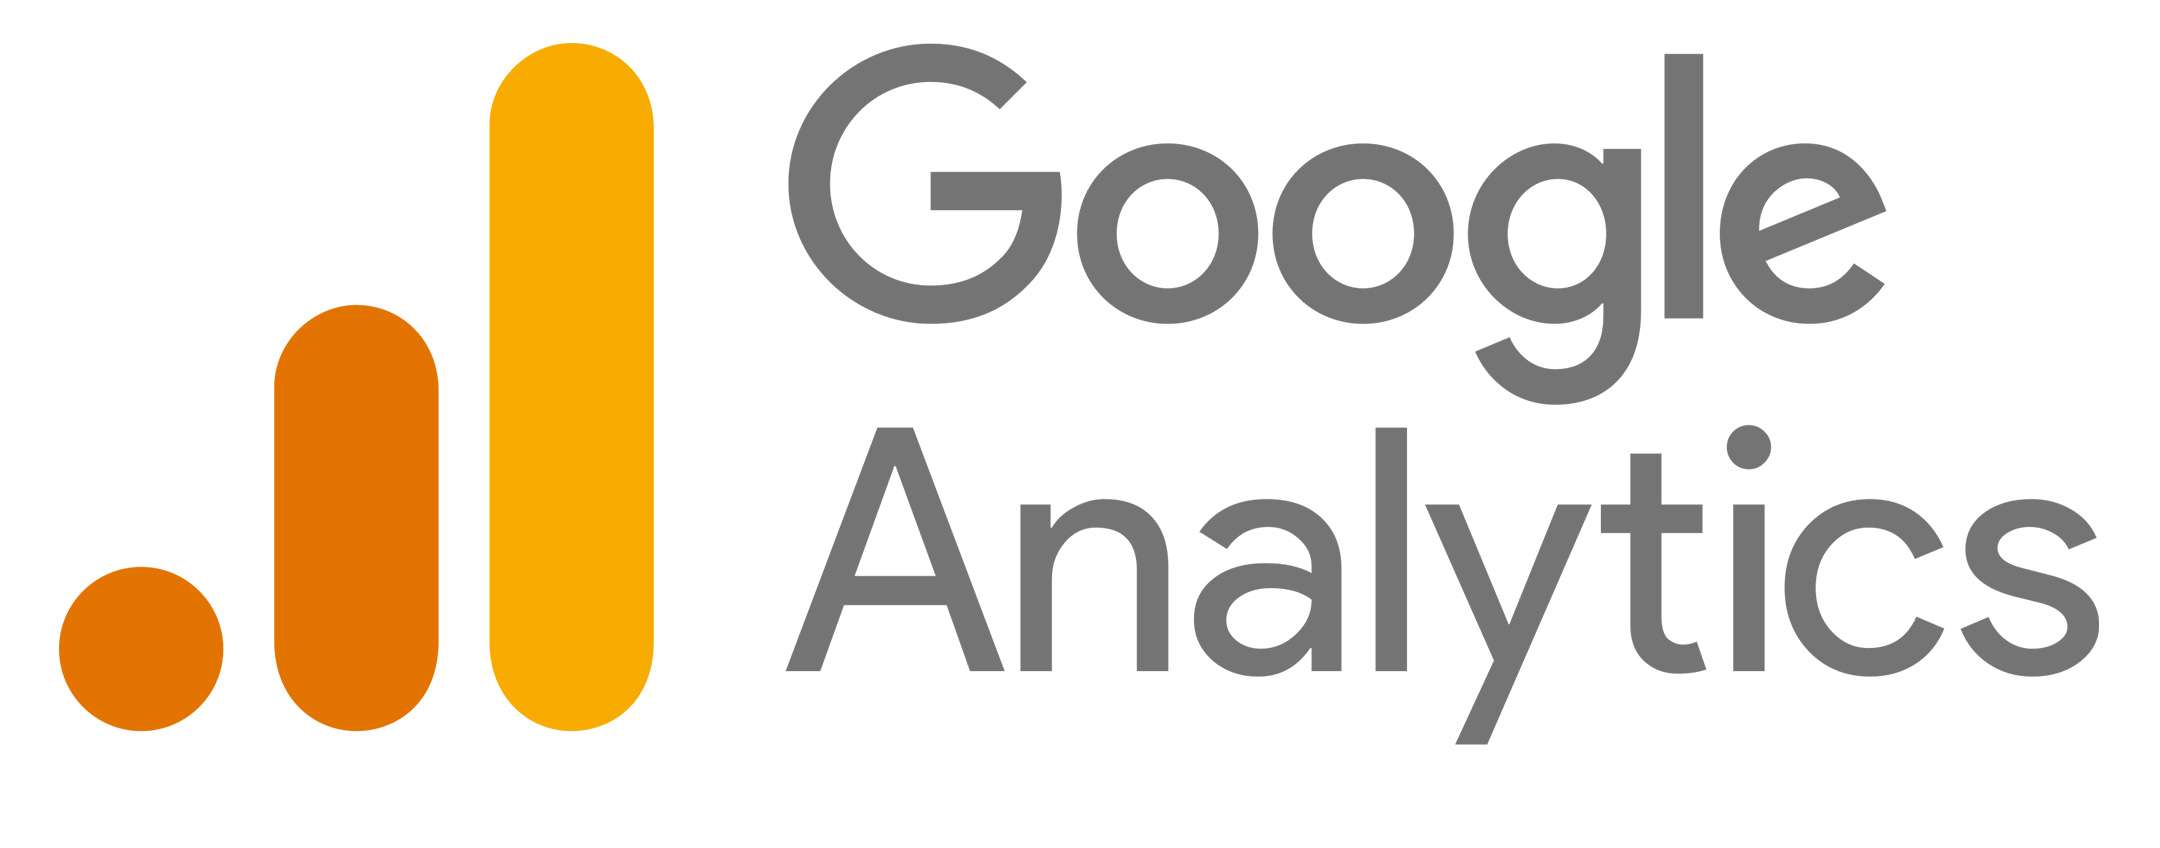 Google Analytics non rispetta la legge sulla privacy